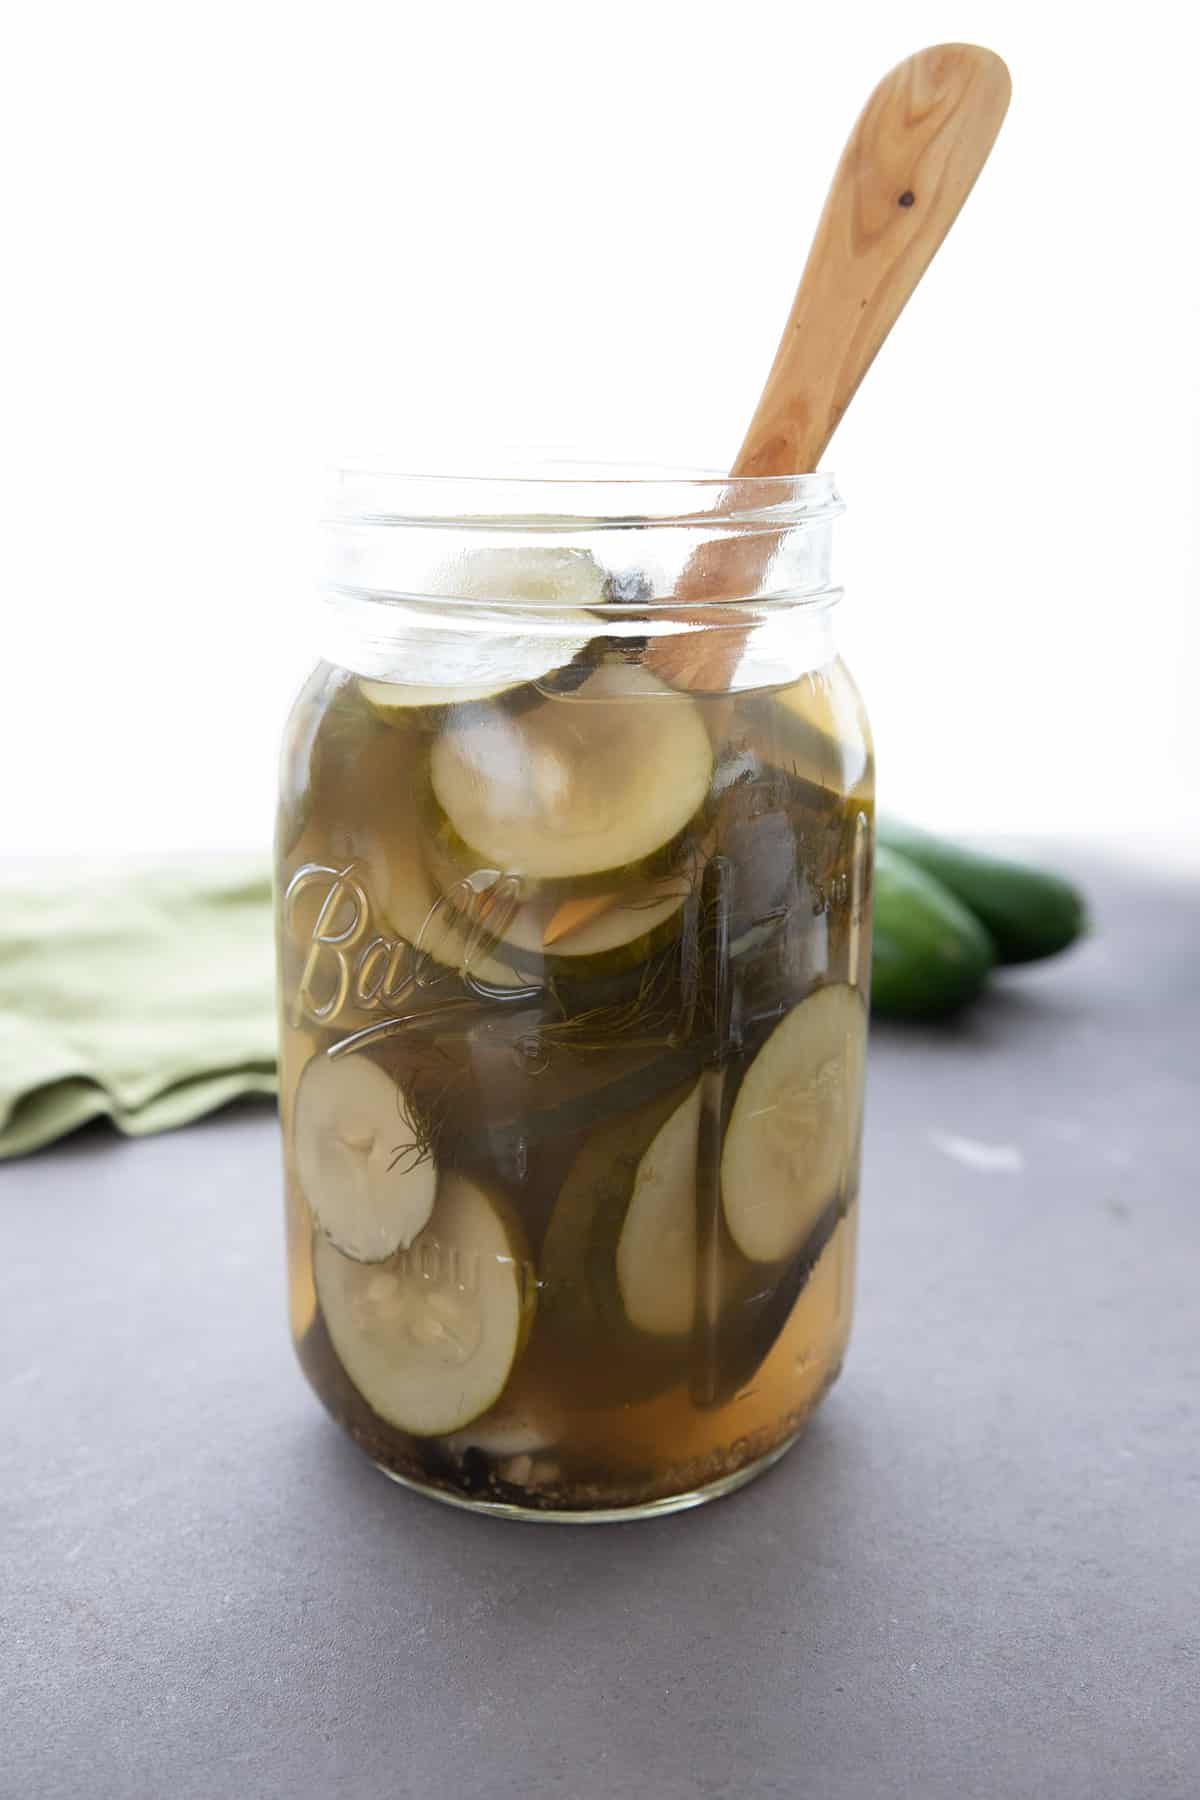 Stor glasskrukke fylt med keto pickles. 